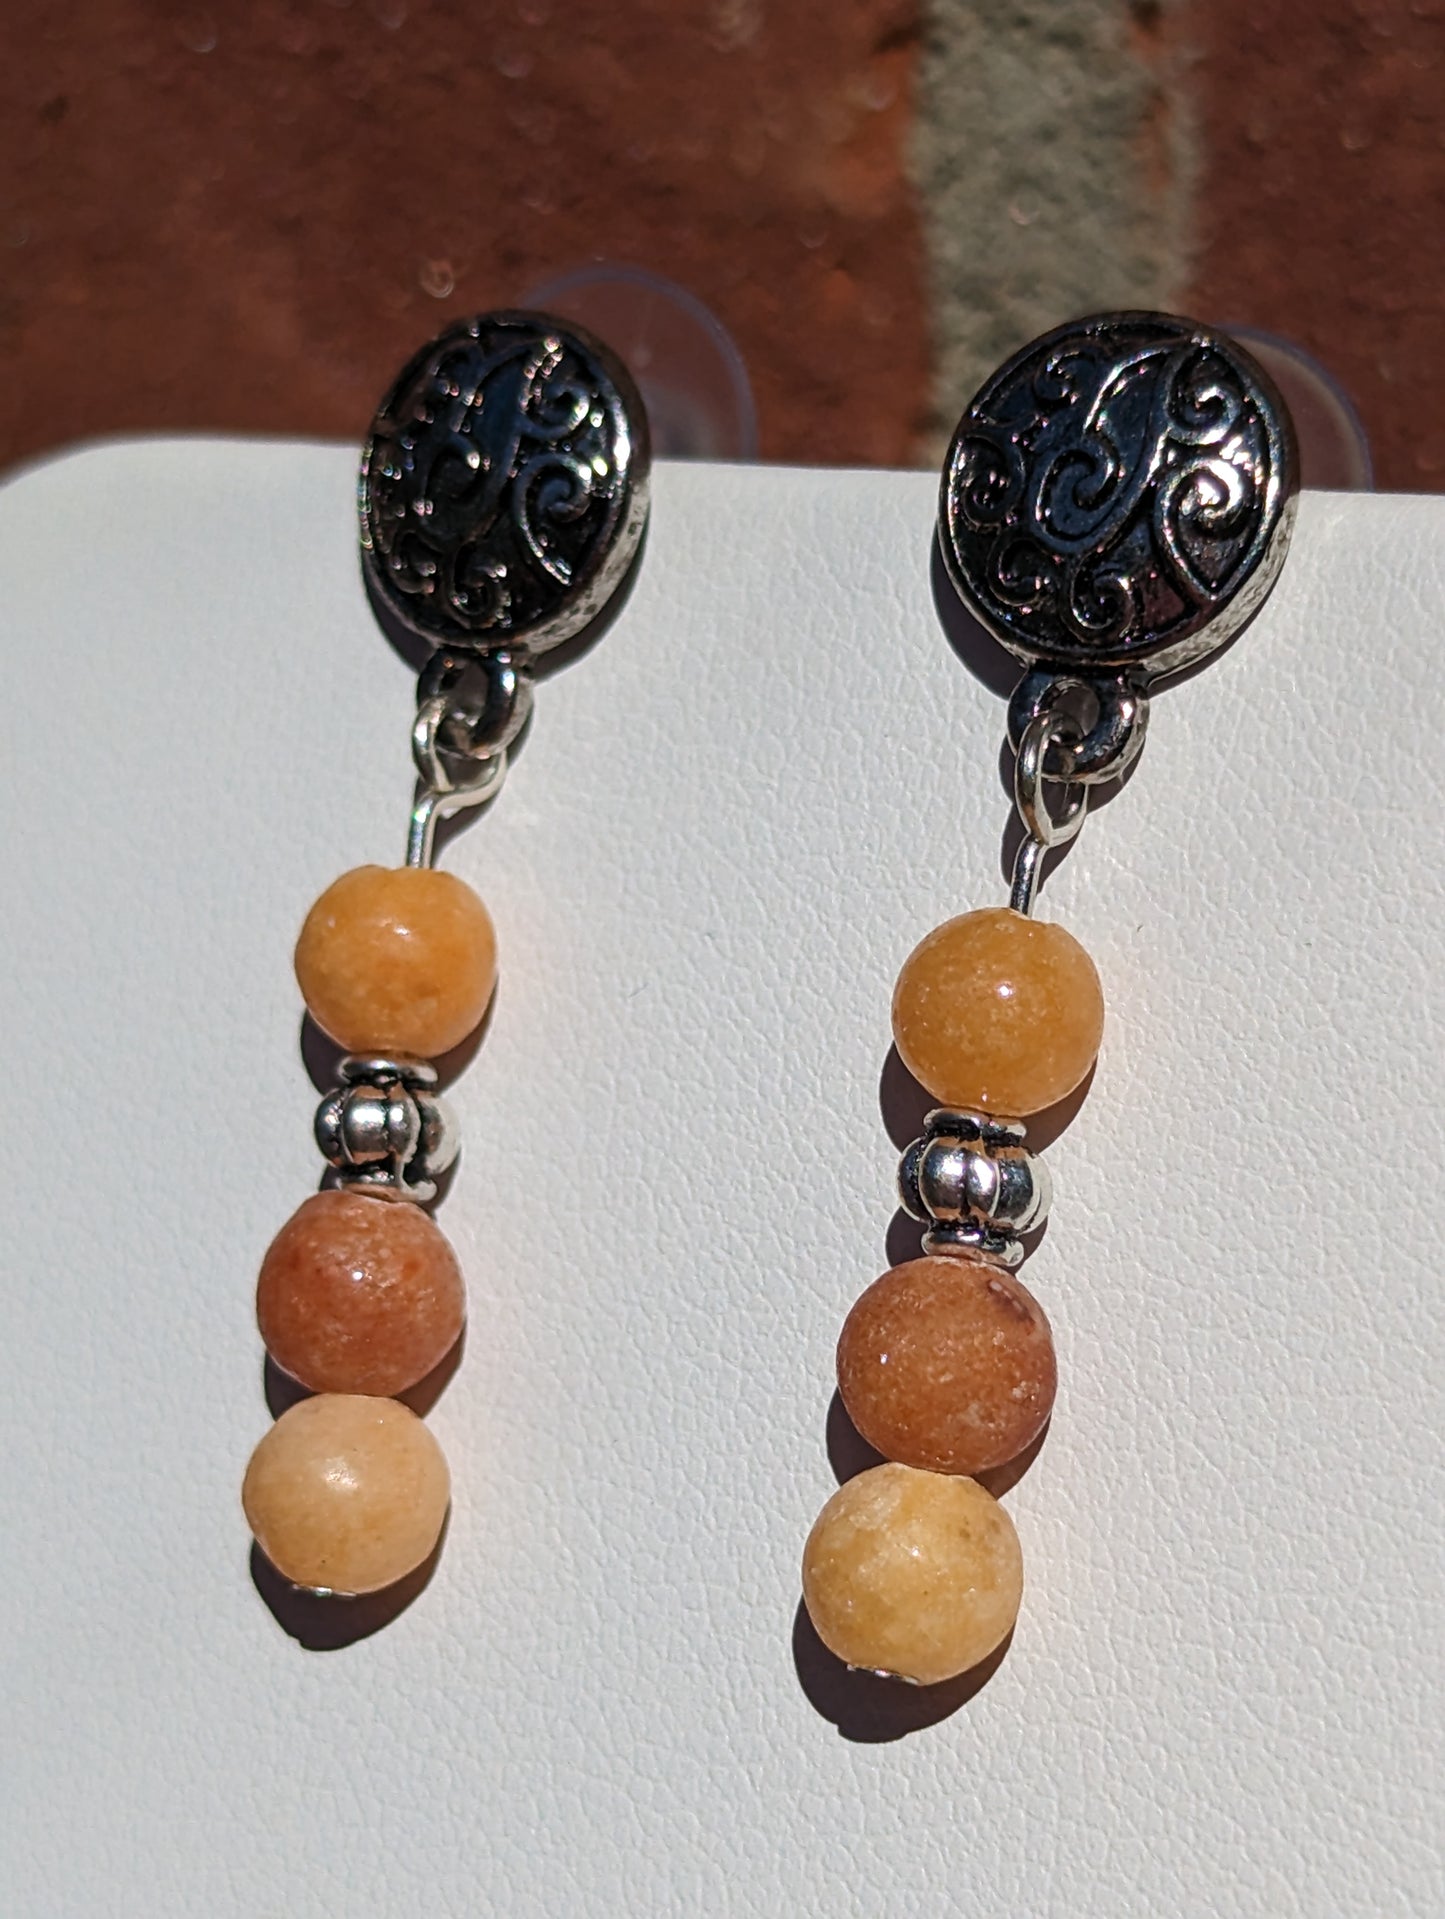 Carnelian Bead Earrings on Antique Silver-toned Studs